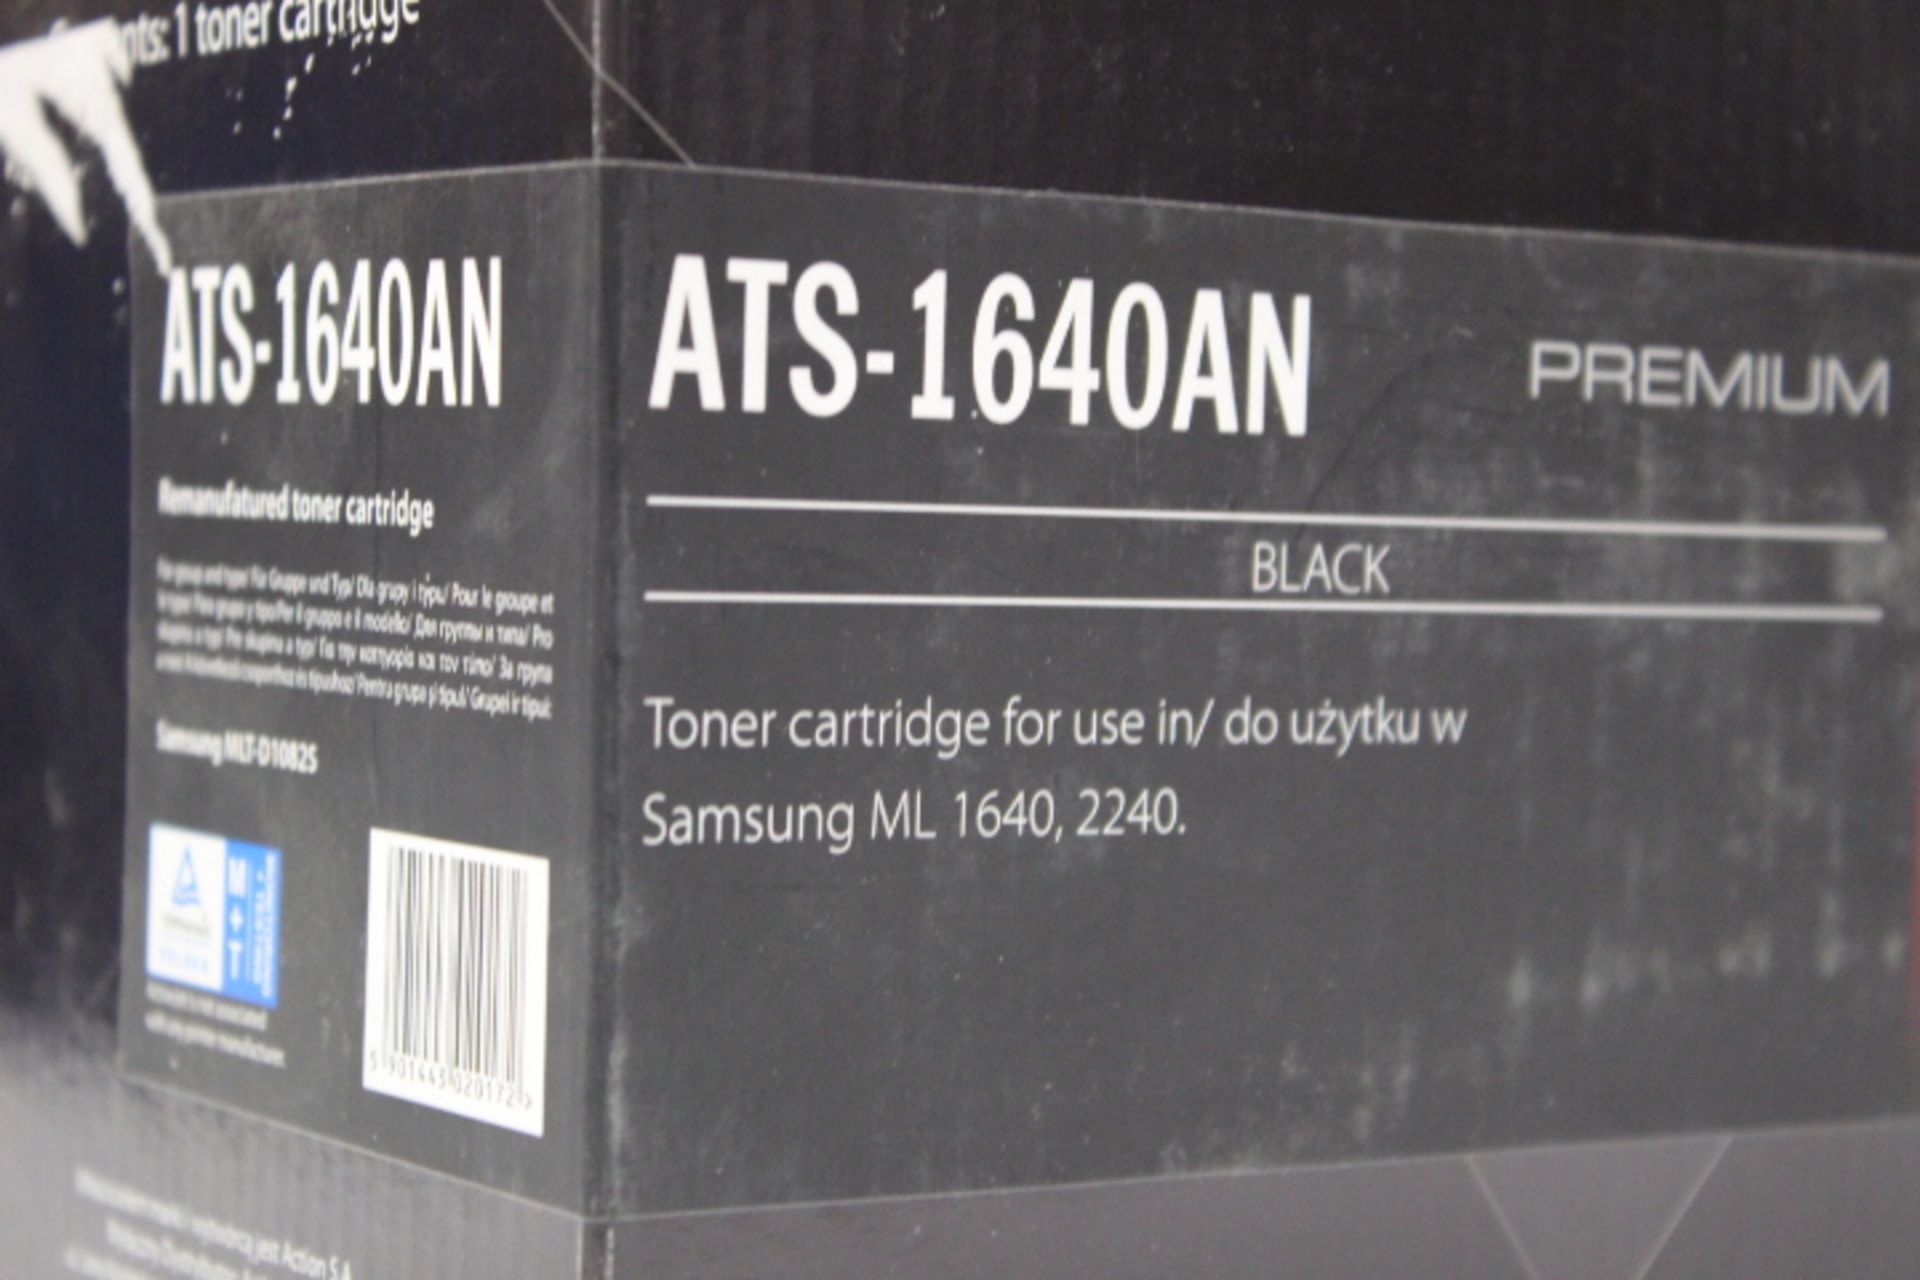 1x Active Jet Black Toner Cartridge ATS 1640 AN - Image 2 of 2